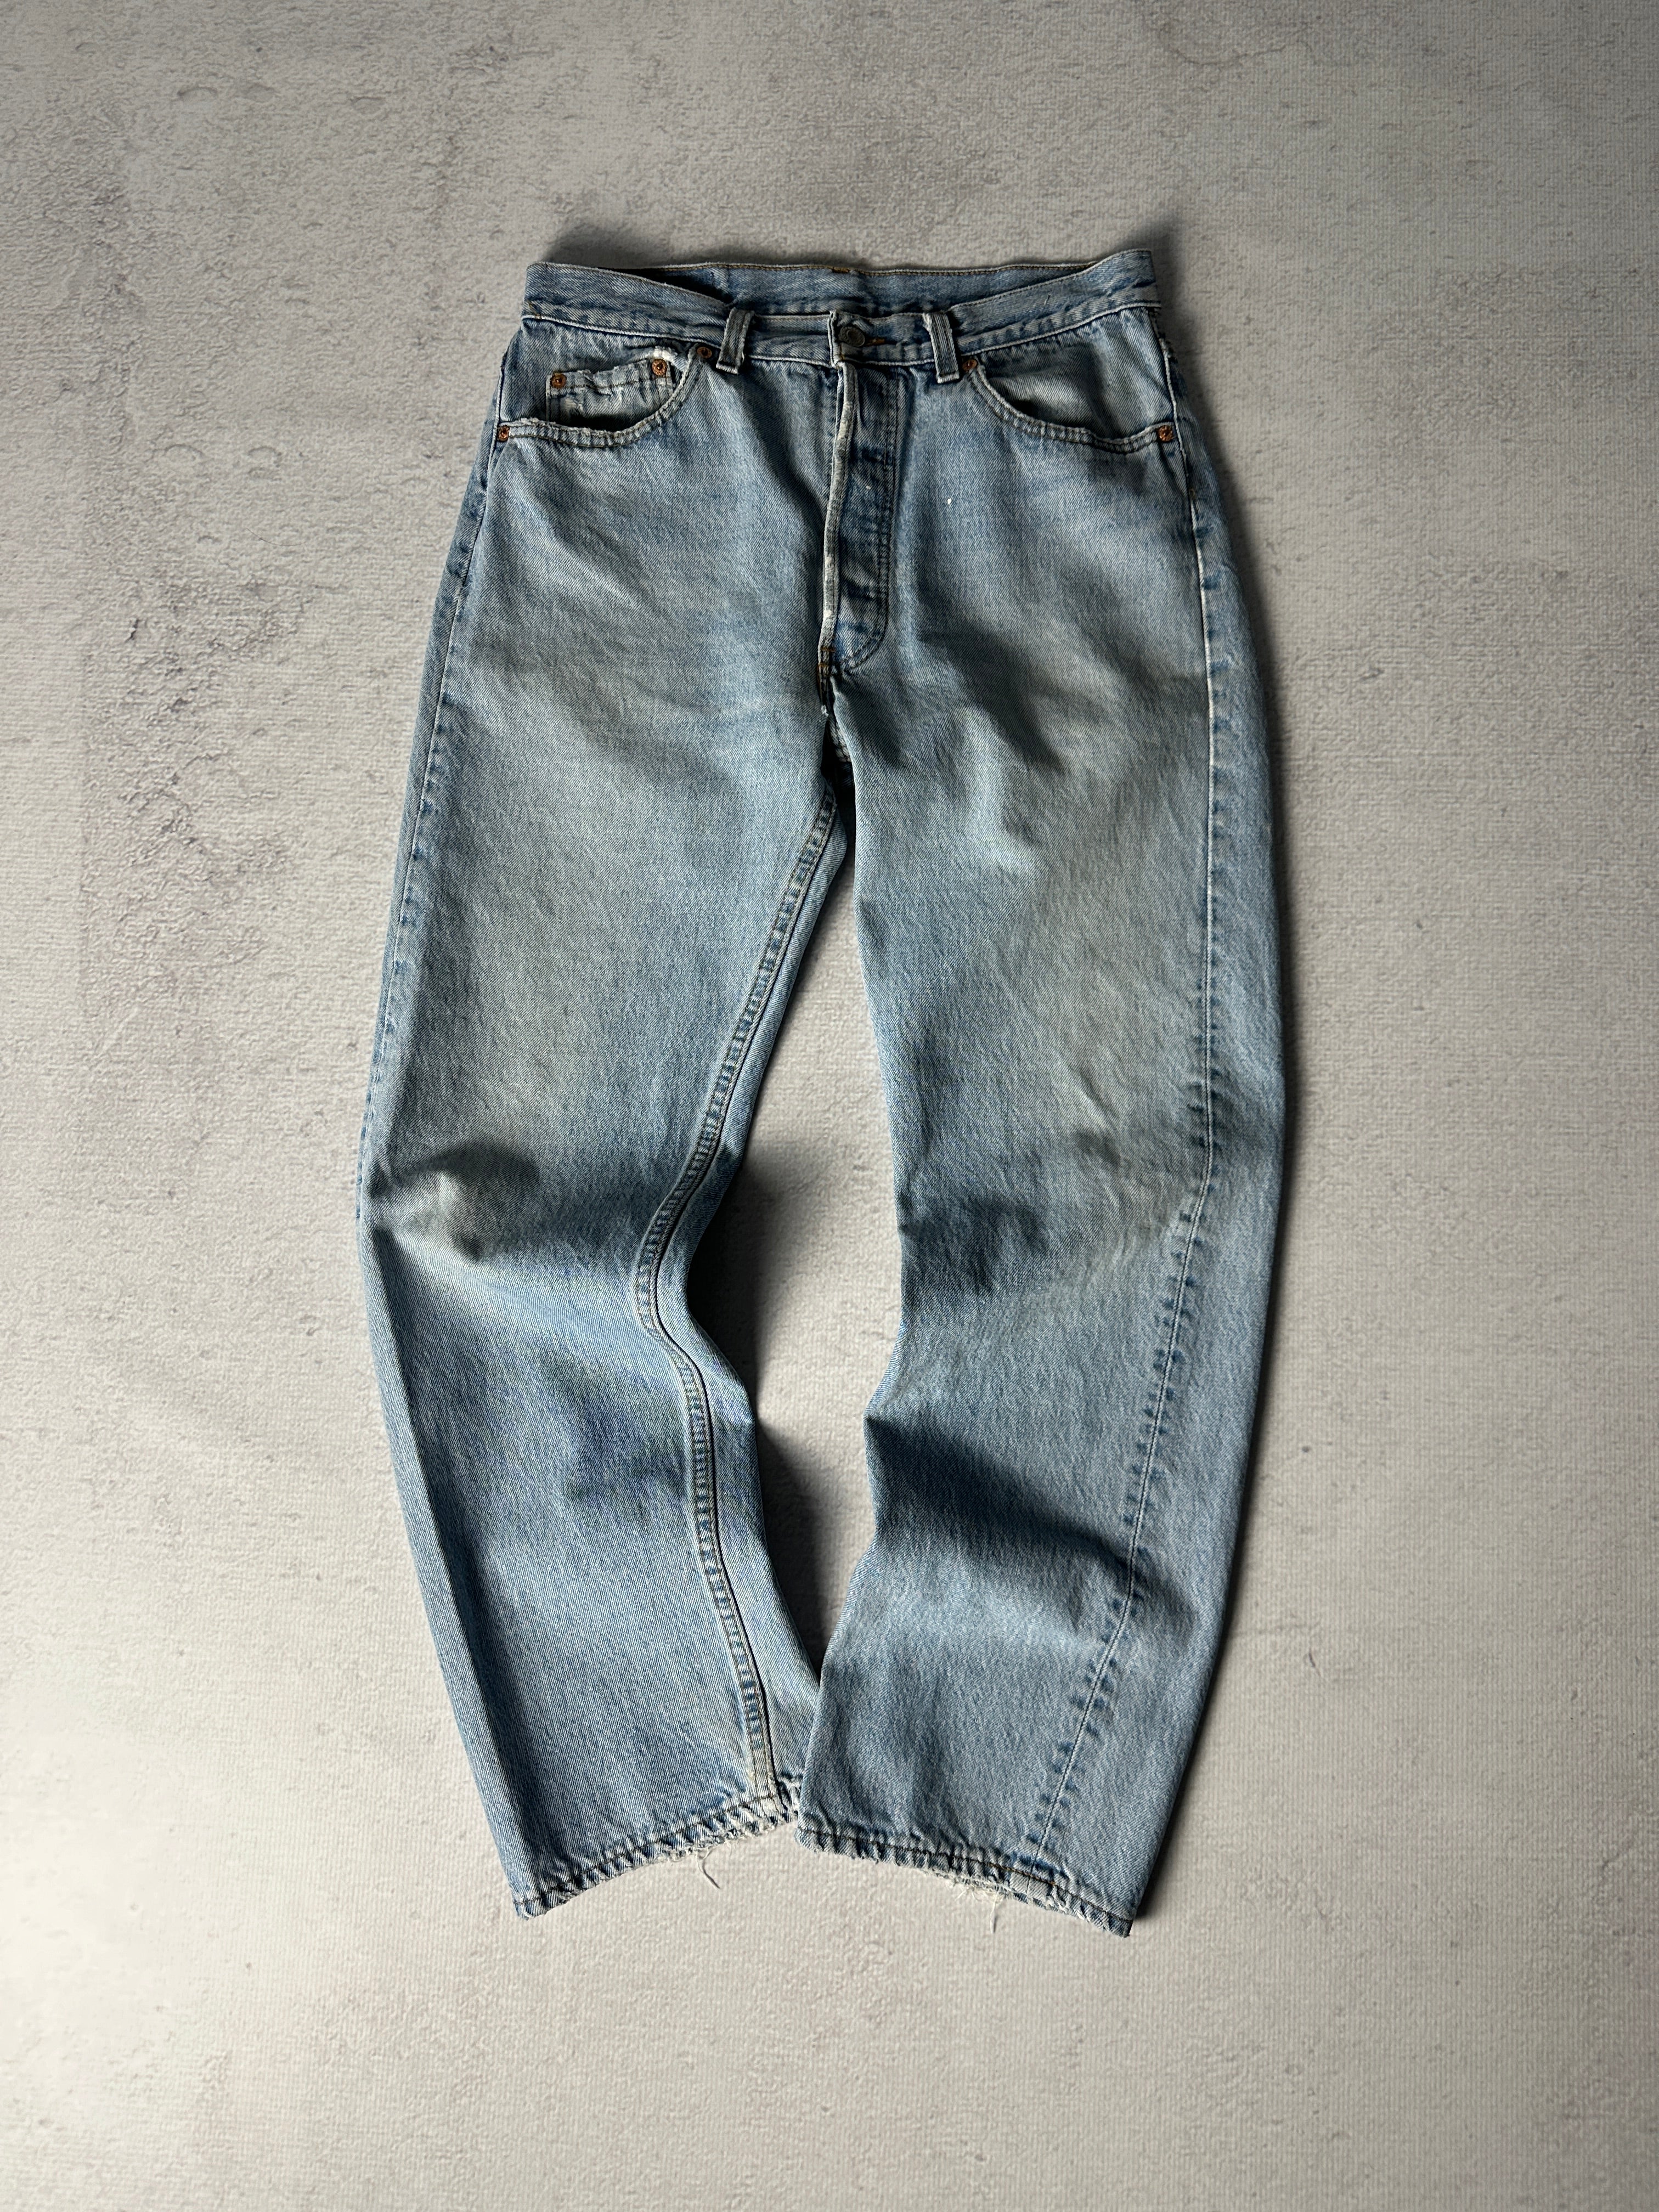 Vintage Levis 501 Jeans - Women's 34W30L